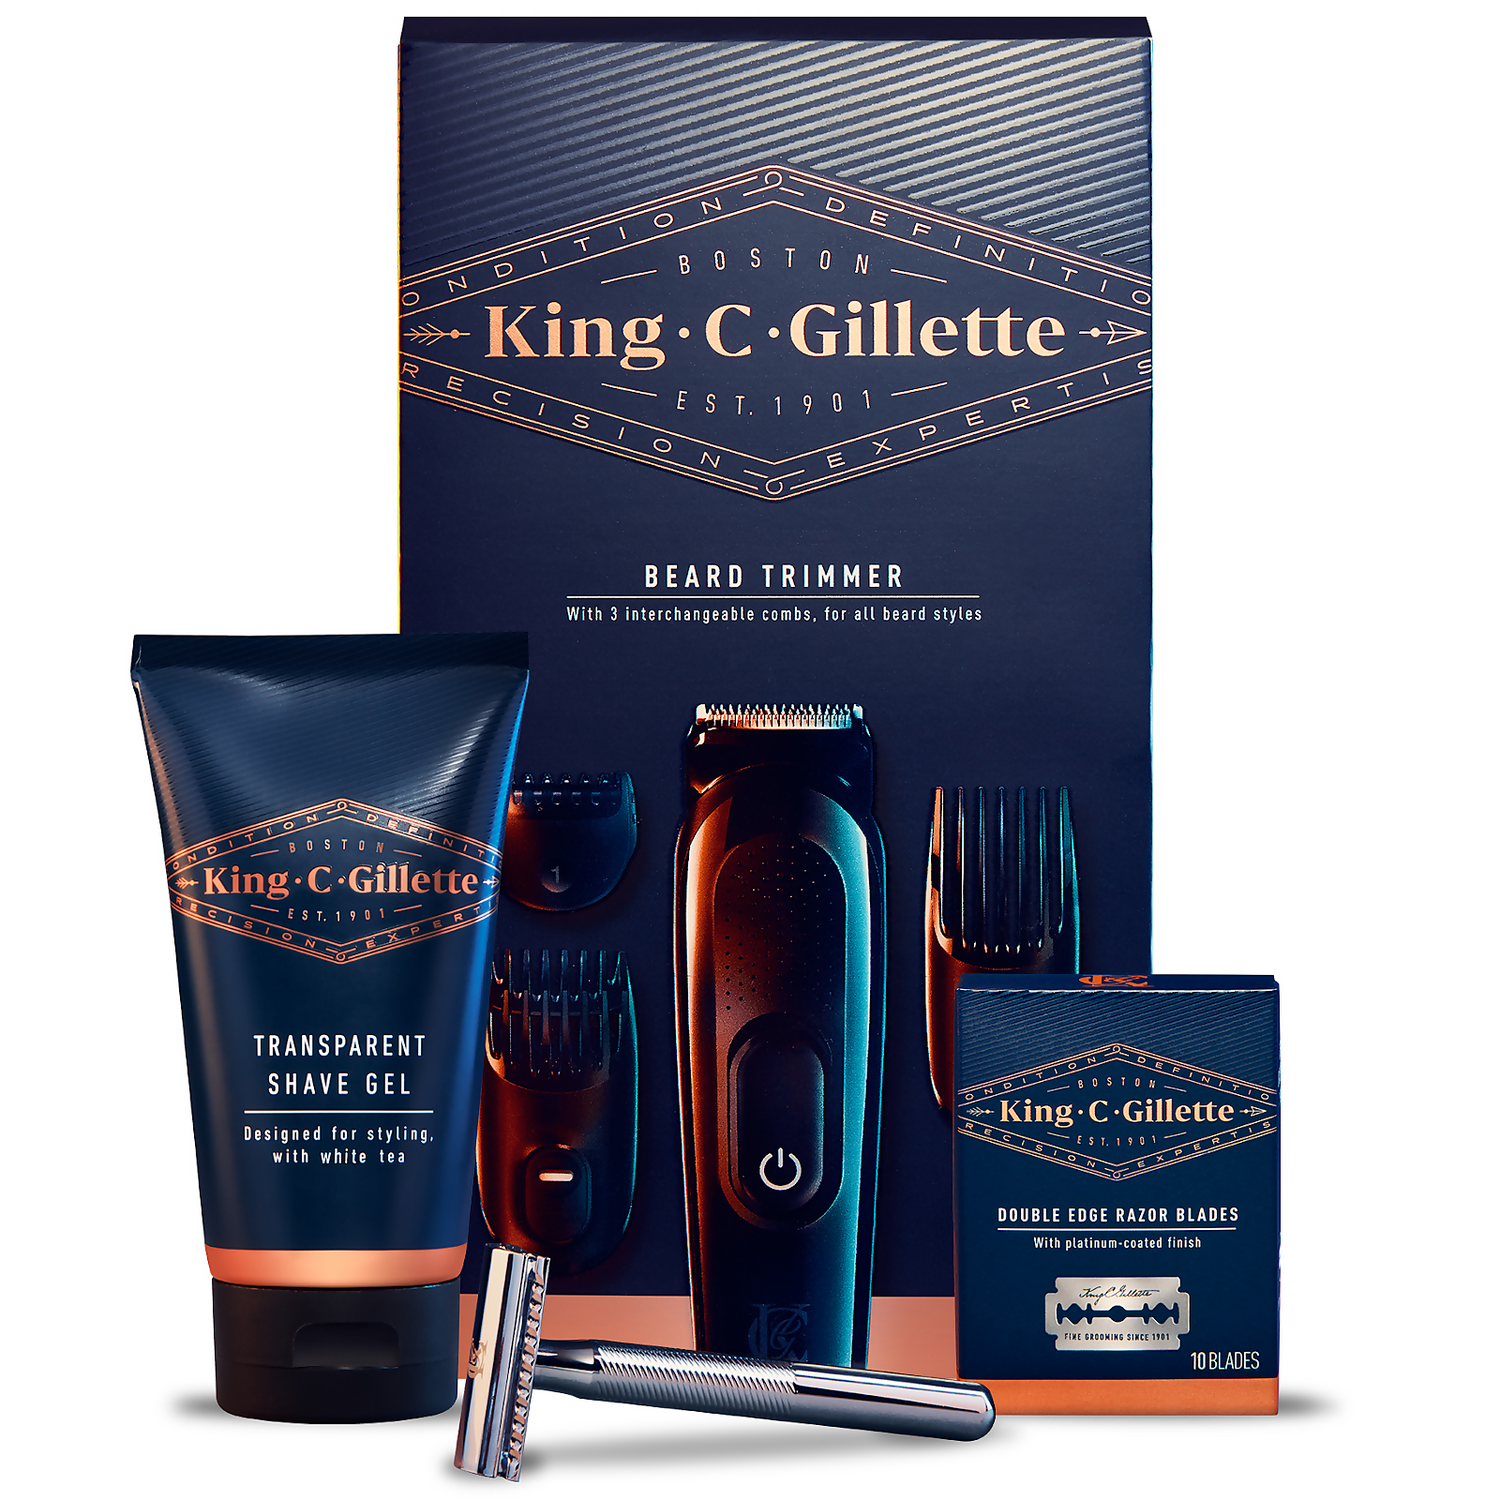 King C. Gillette Beard Trimmer & Double Edge Razor Styling Kit